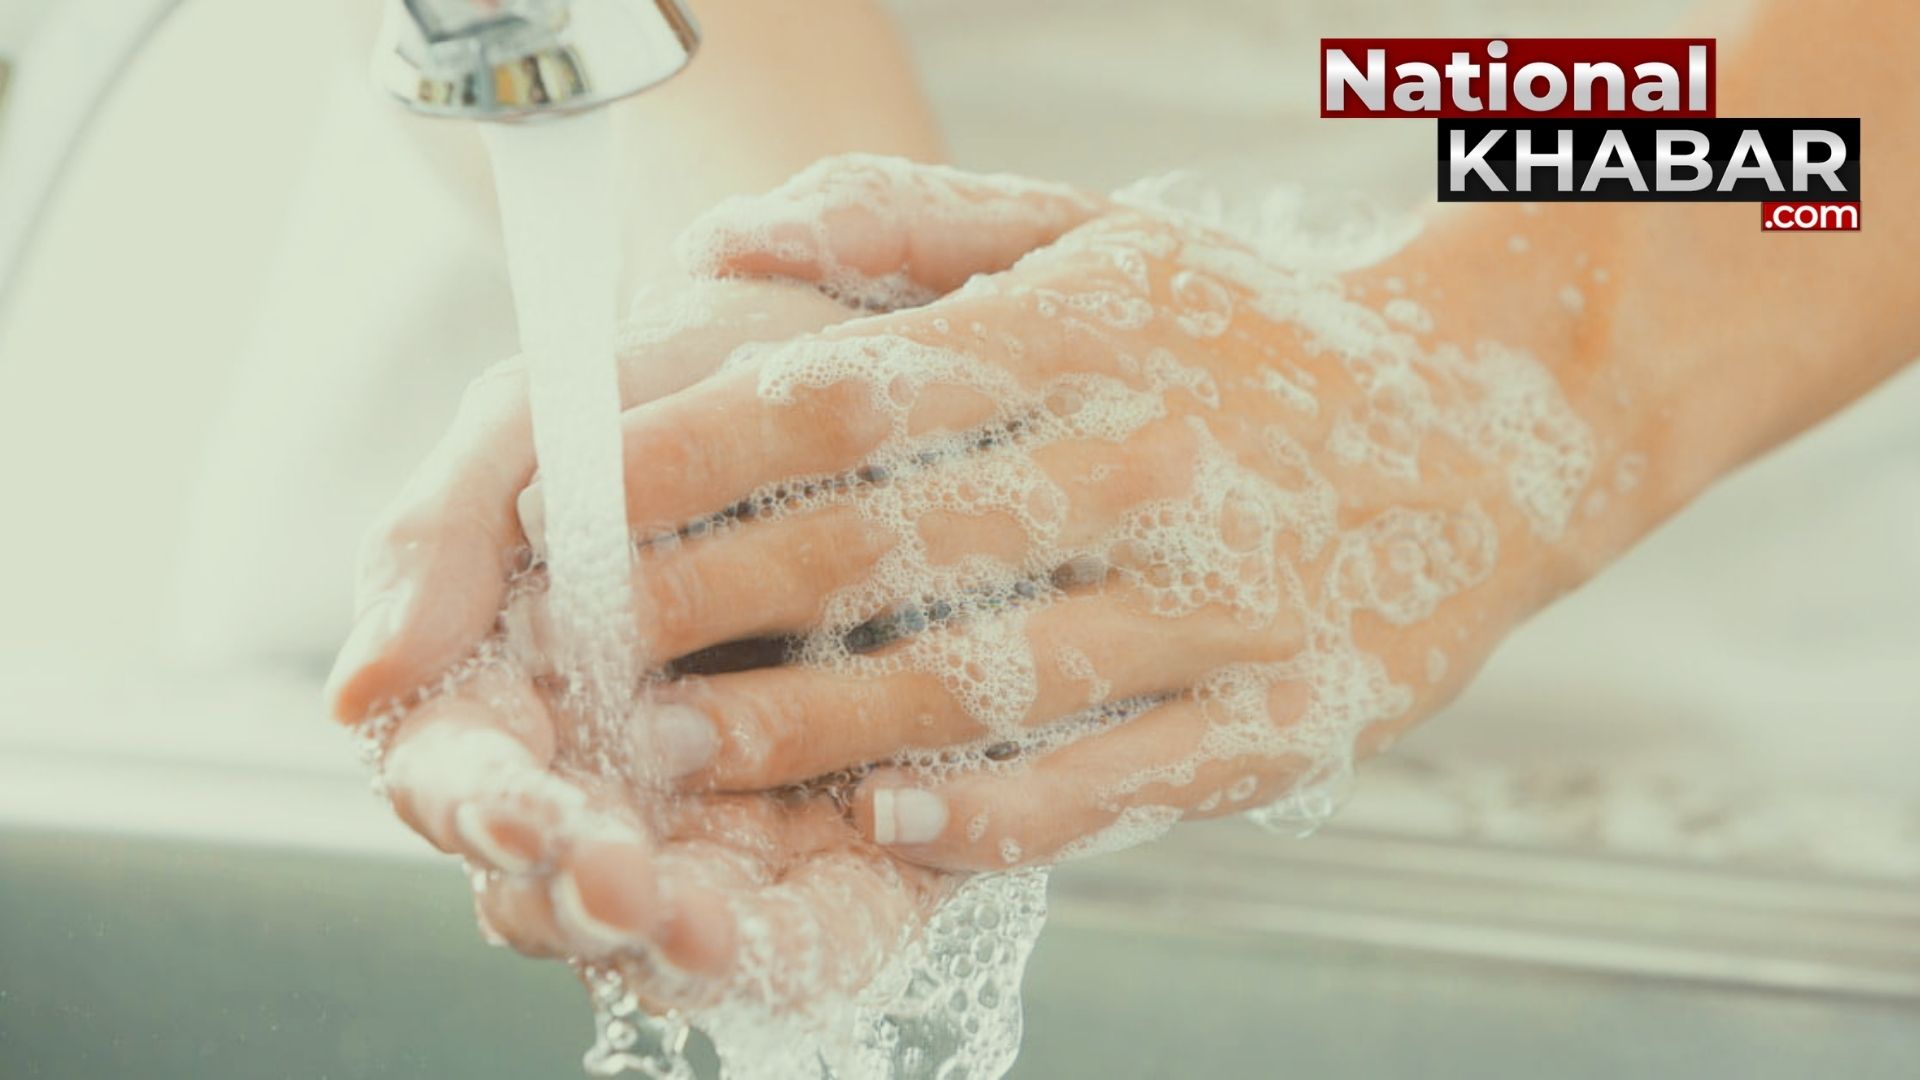 हाथ हम धोएं जरूर, बीमारी रहेंगी कोसों दूर, इसी बात को समझाता है Global Handwashing Day 